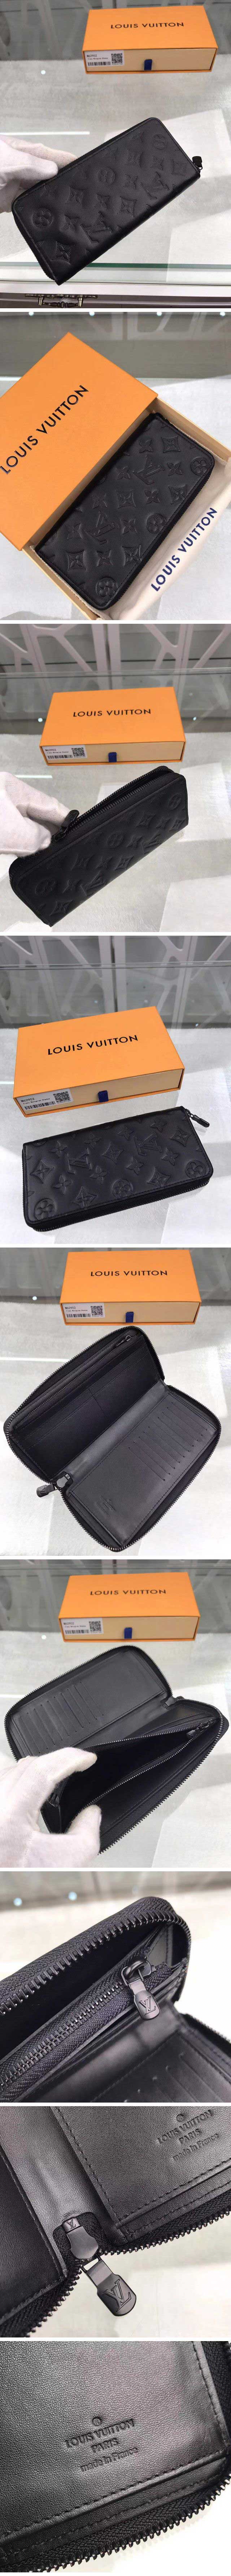 Louis Vuitton ルイヴィトン zippy wallet vertical ジッピーウォレット・ヴェルティカル M62902 モノグラム・シャドウ